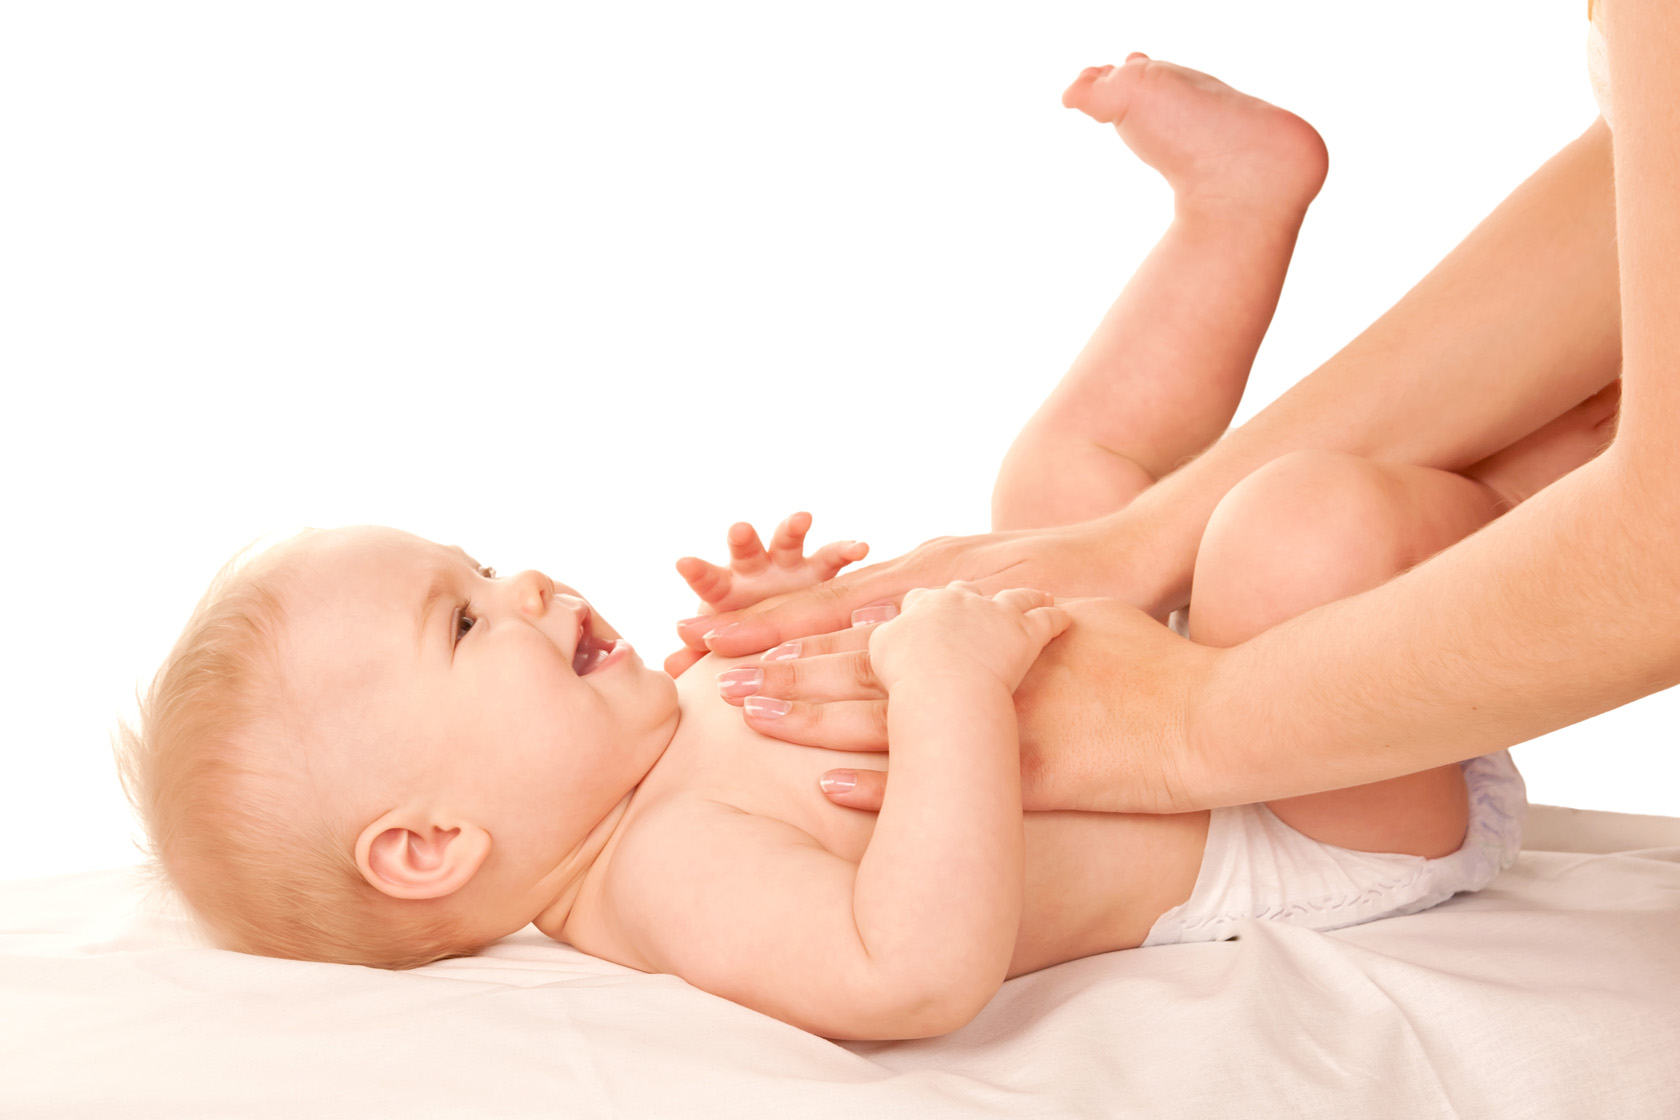 baby care market è in crescita